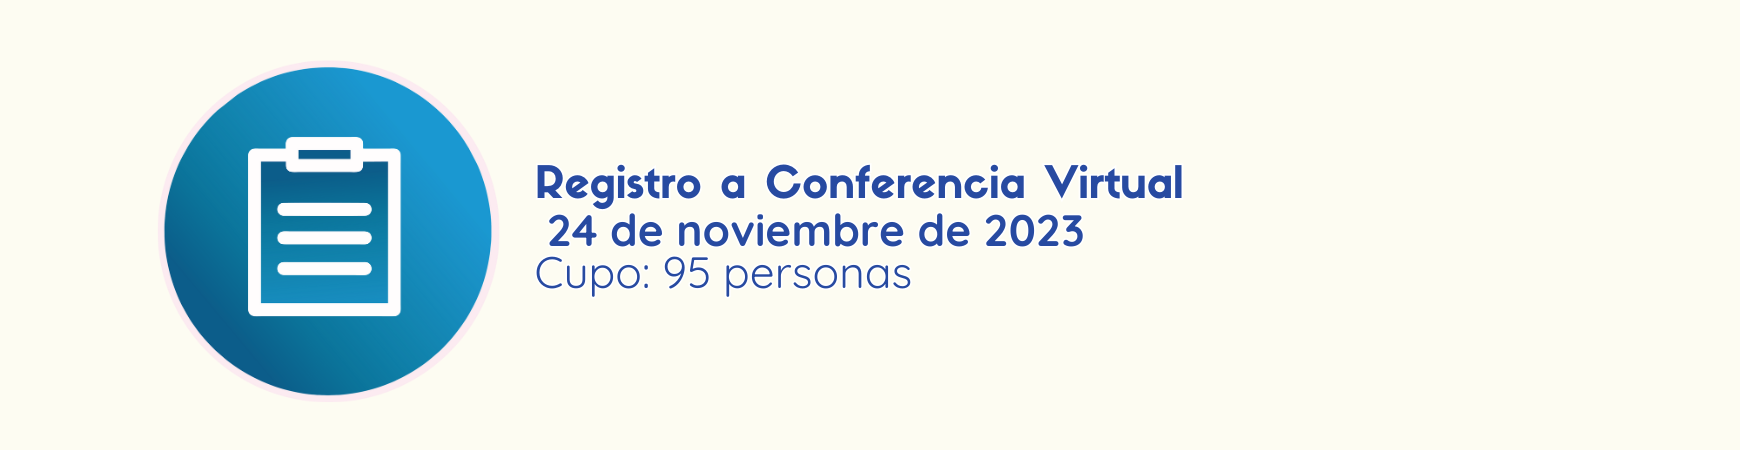 Imagen que vincula al Registro a Conferencias Virtuales